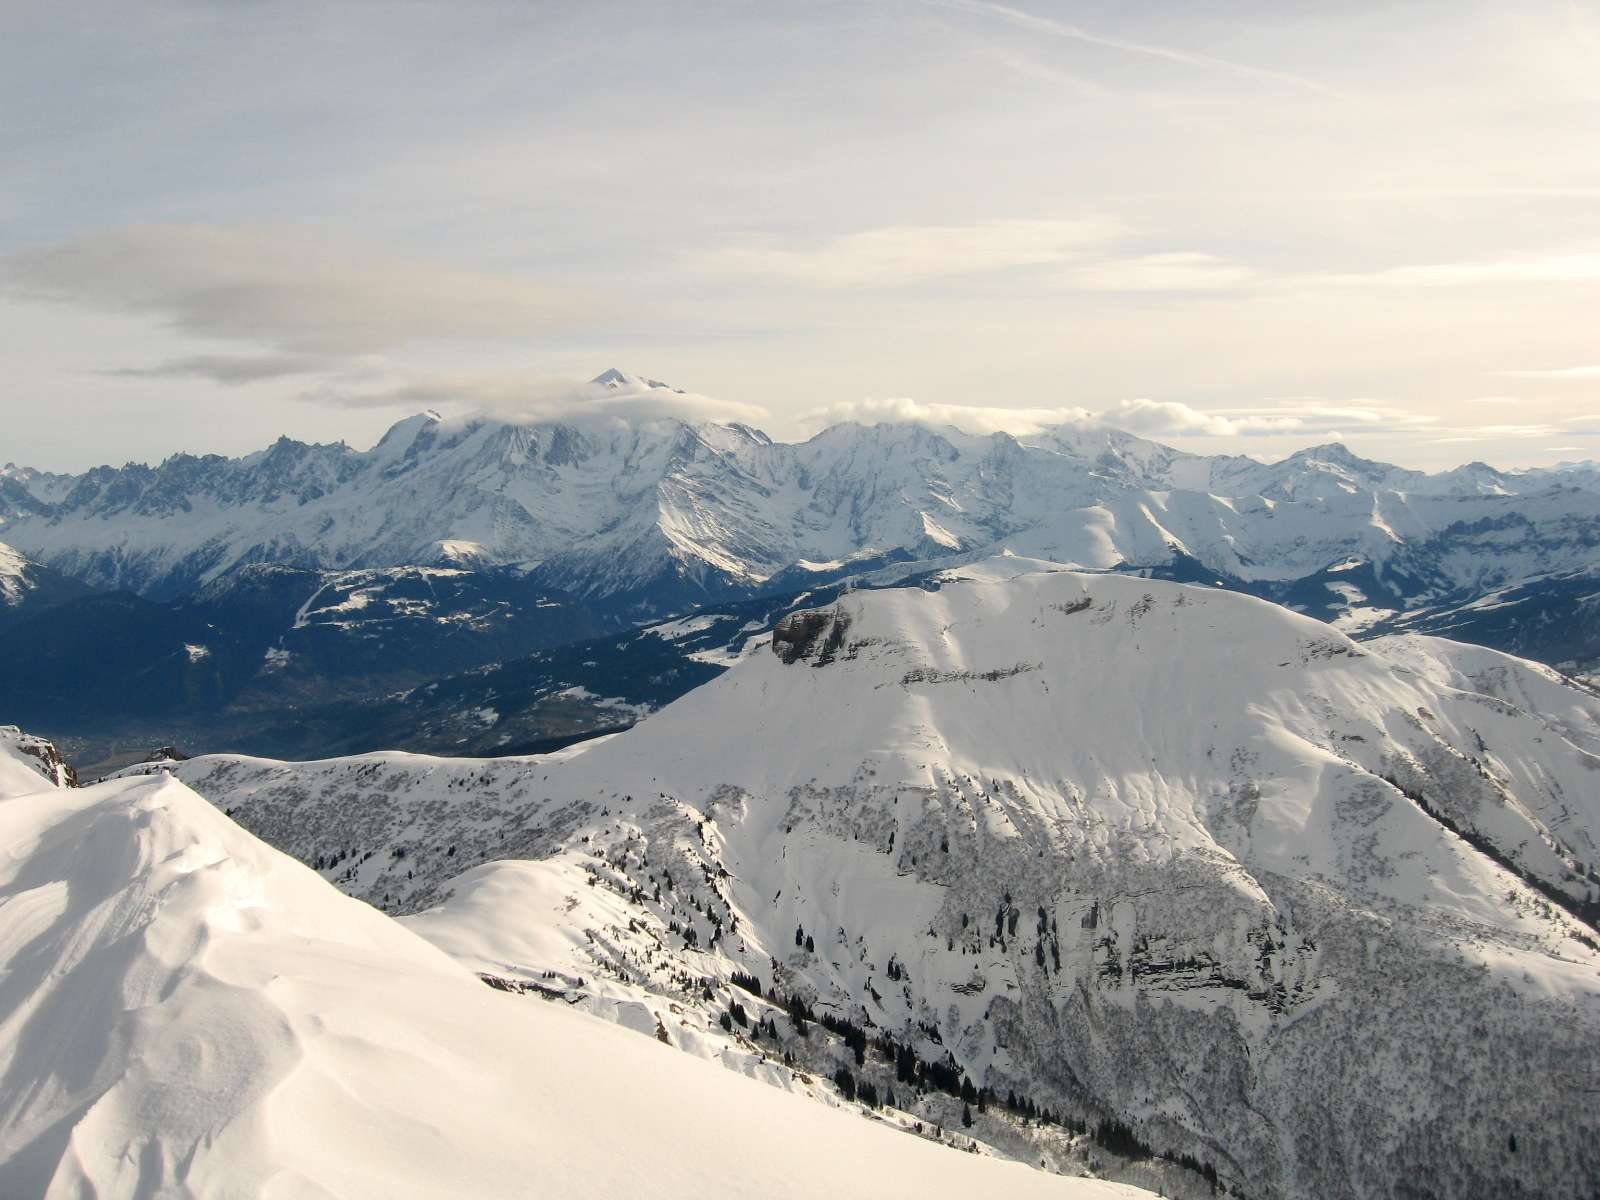 Mt Blanc : Mt blanc dans son écharpe